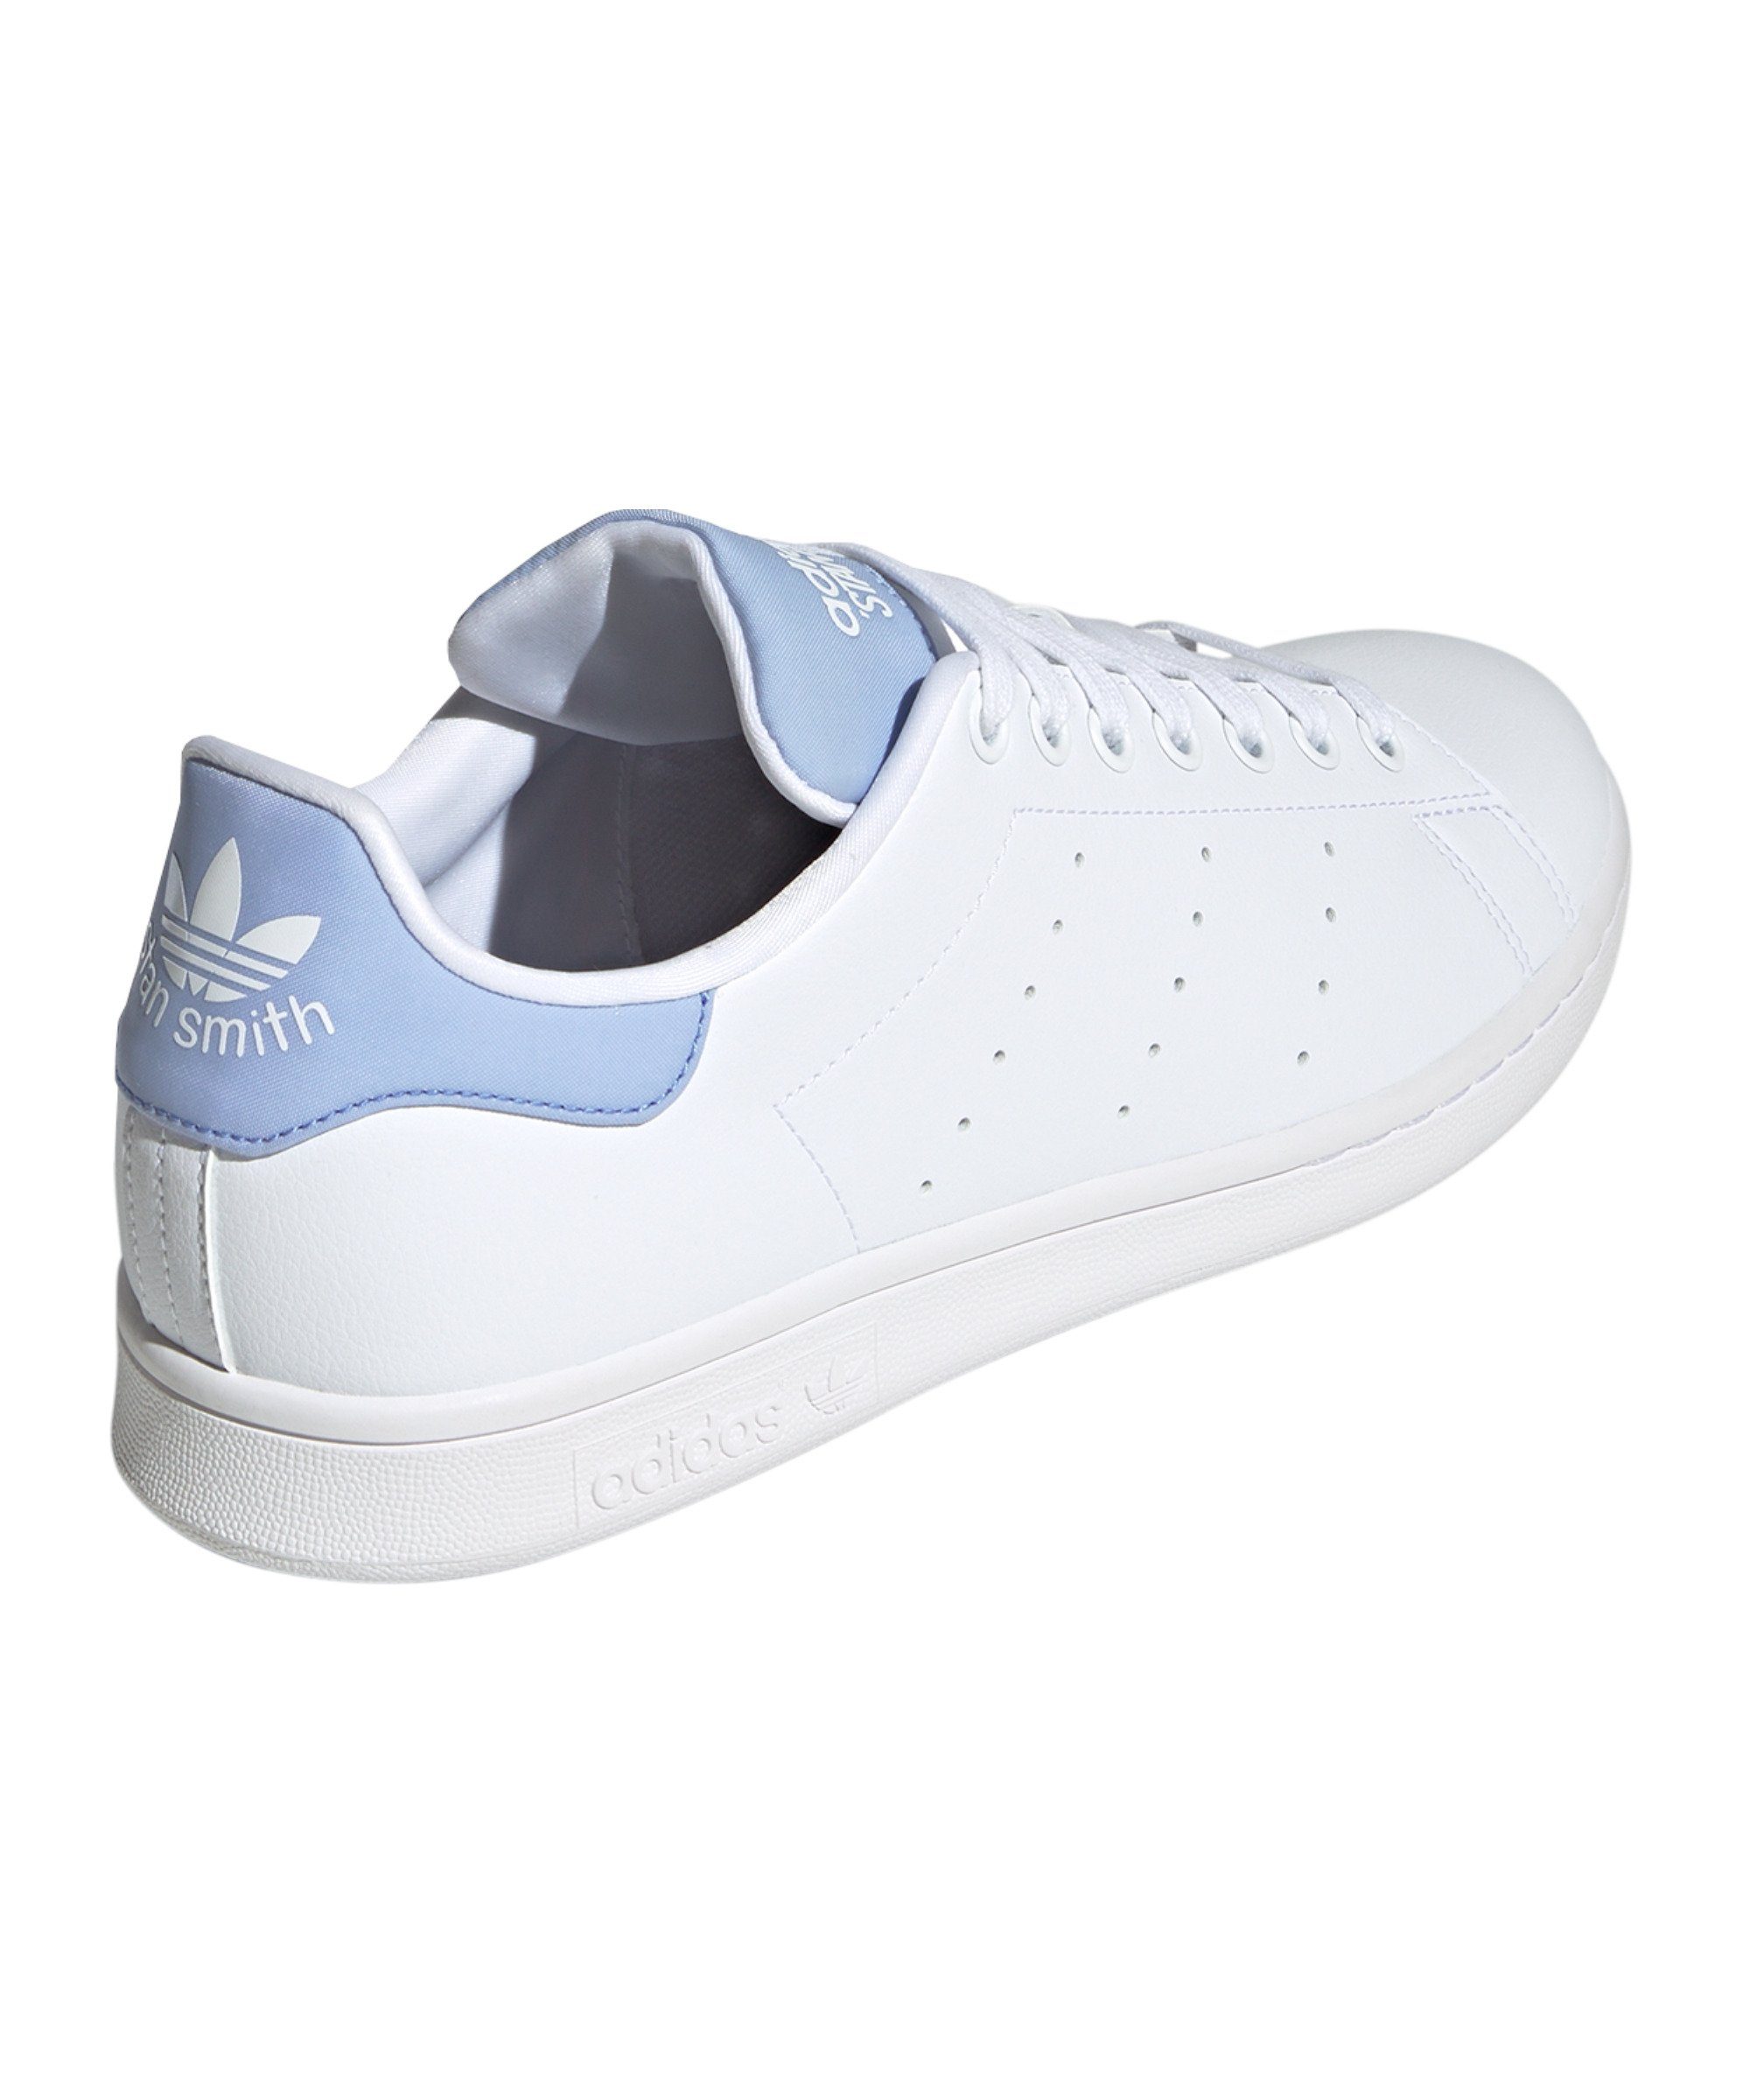 Stan Sneaker adidas Smith Originals weissweissblau